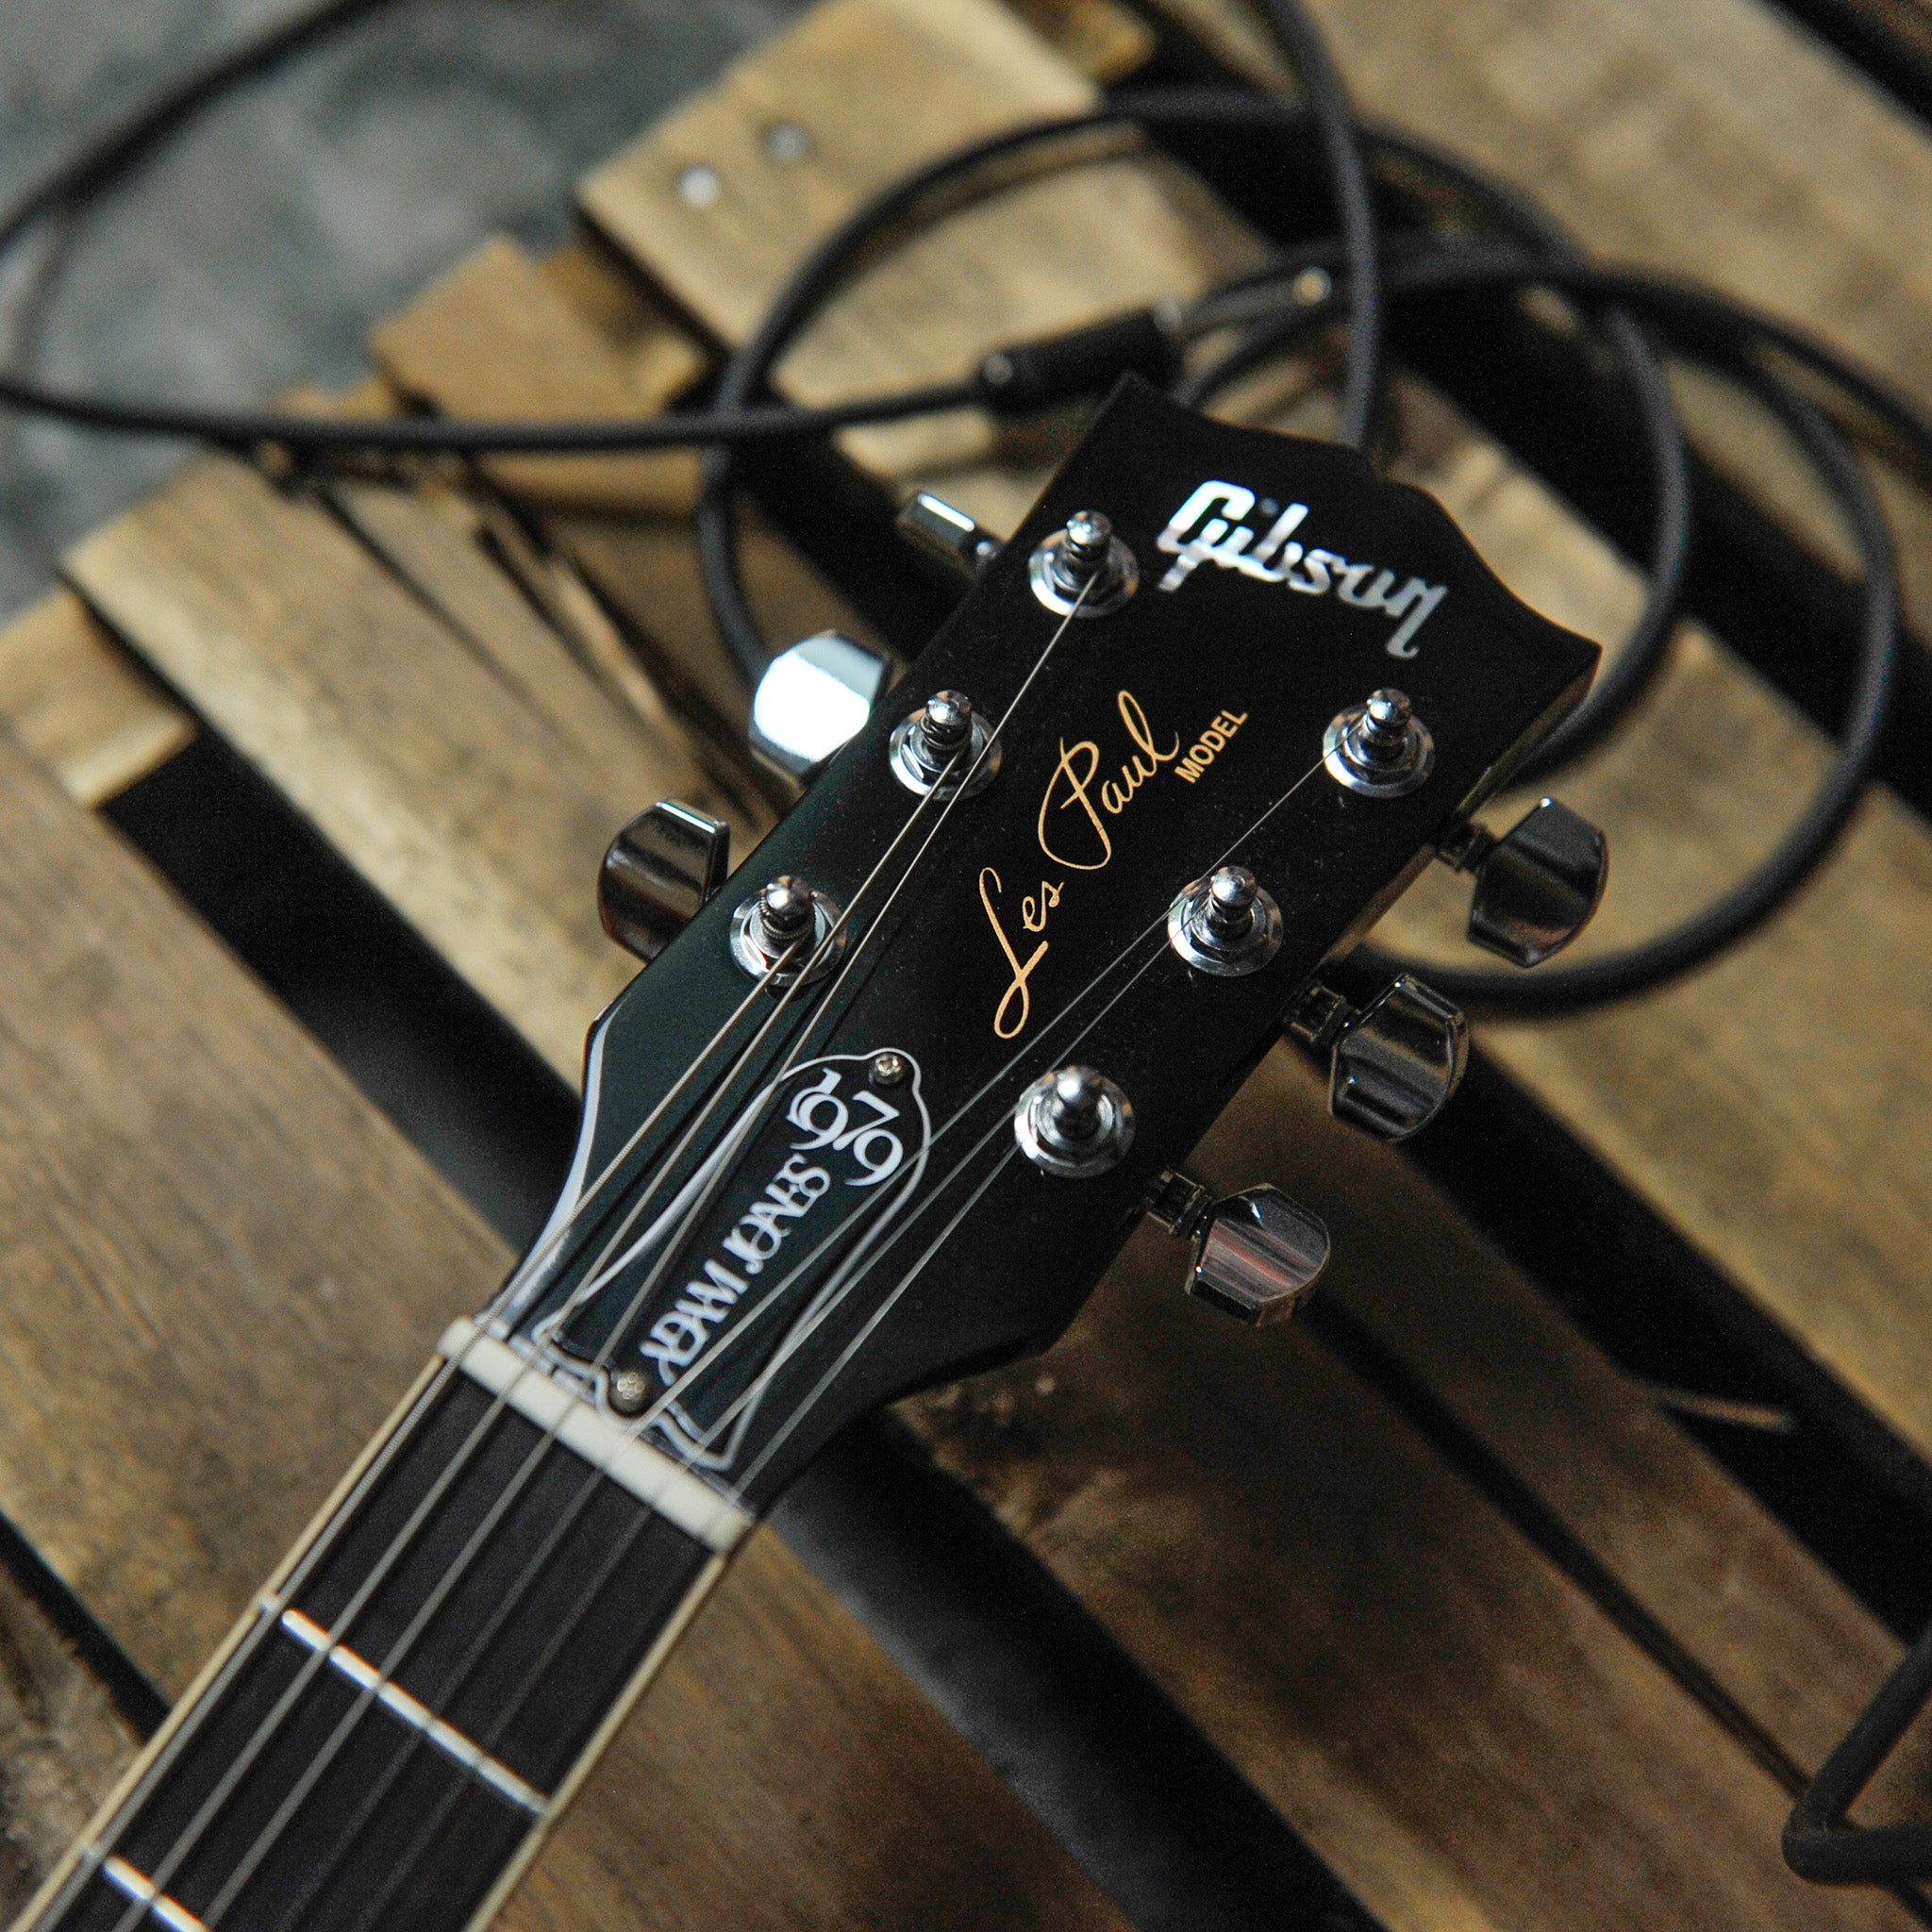 Gibson Adam Jones Les Paul Standard Electric Guitar in Silverburst